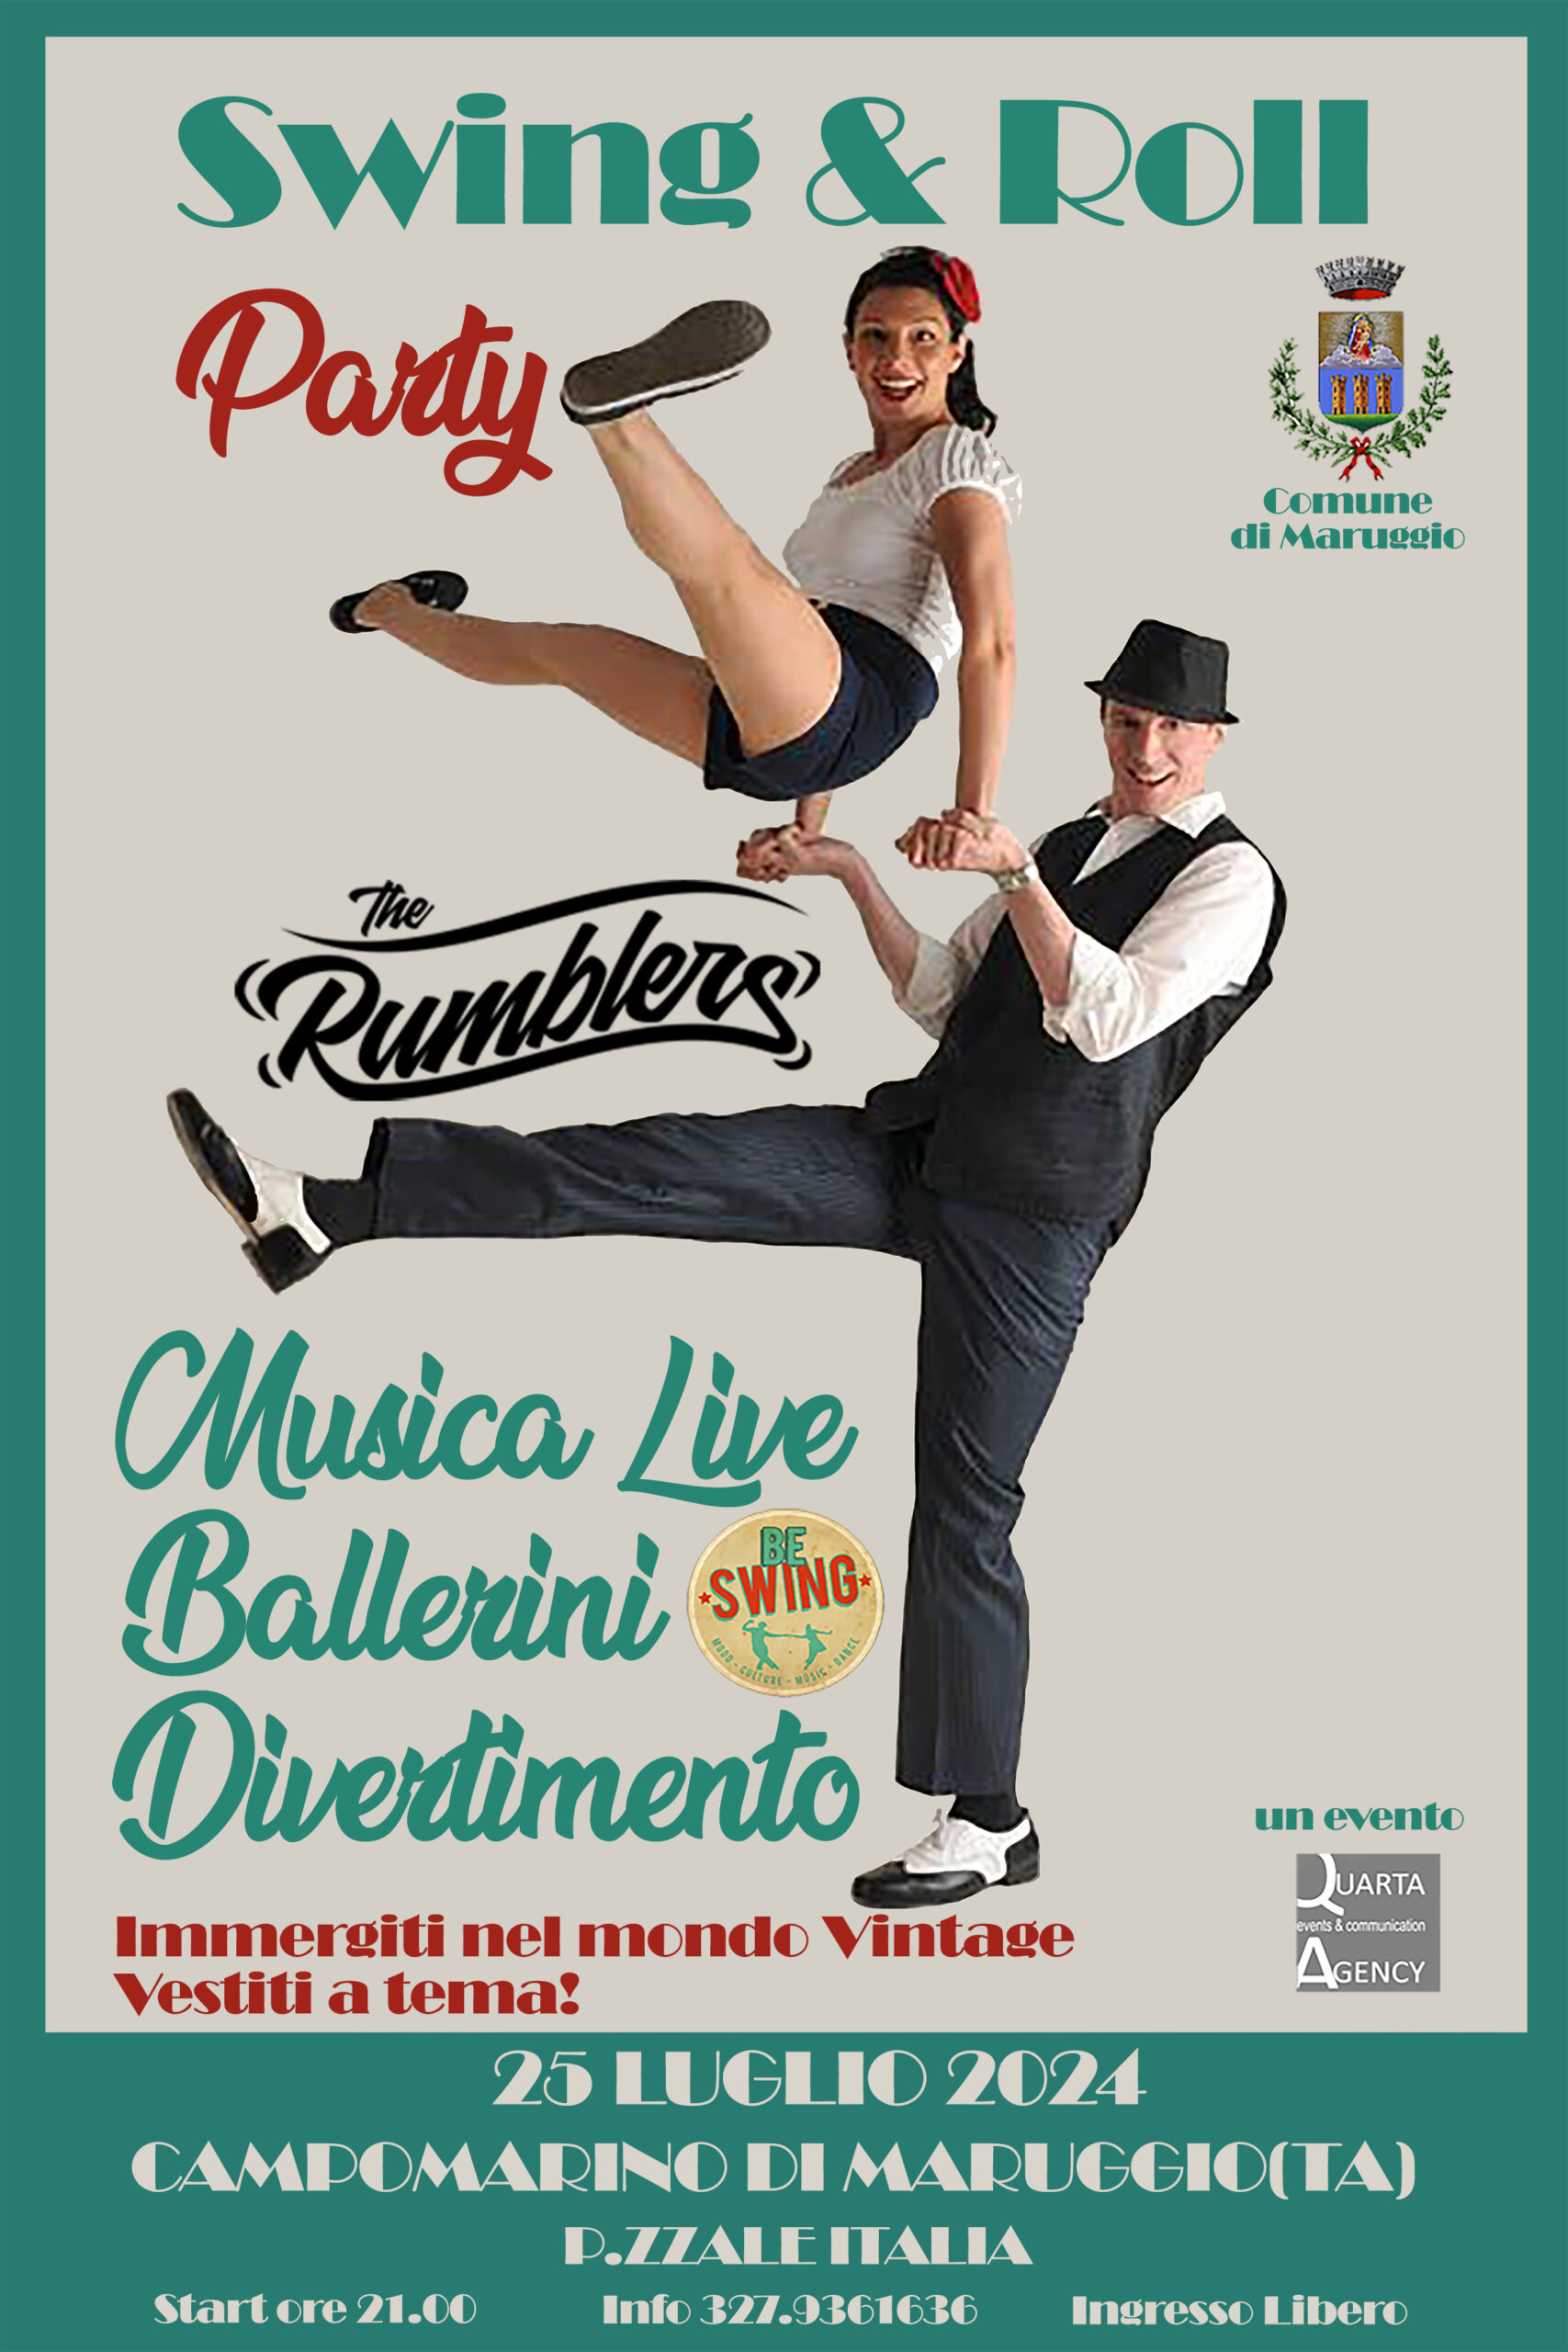 Campomarino di Maruggio: Swing & Roll Party